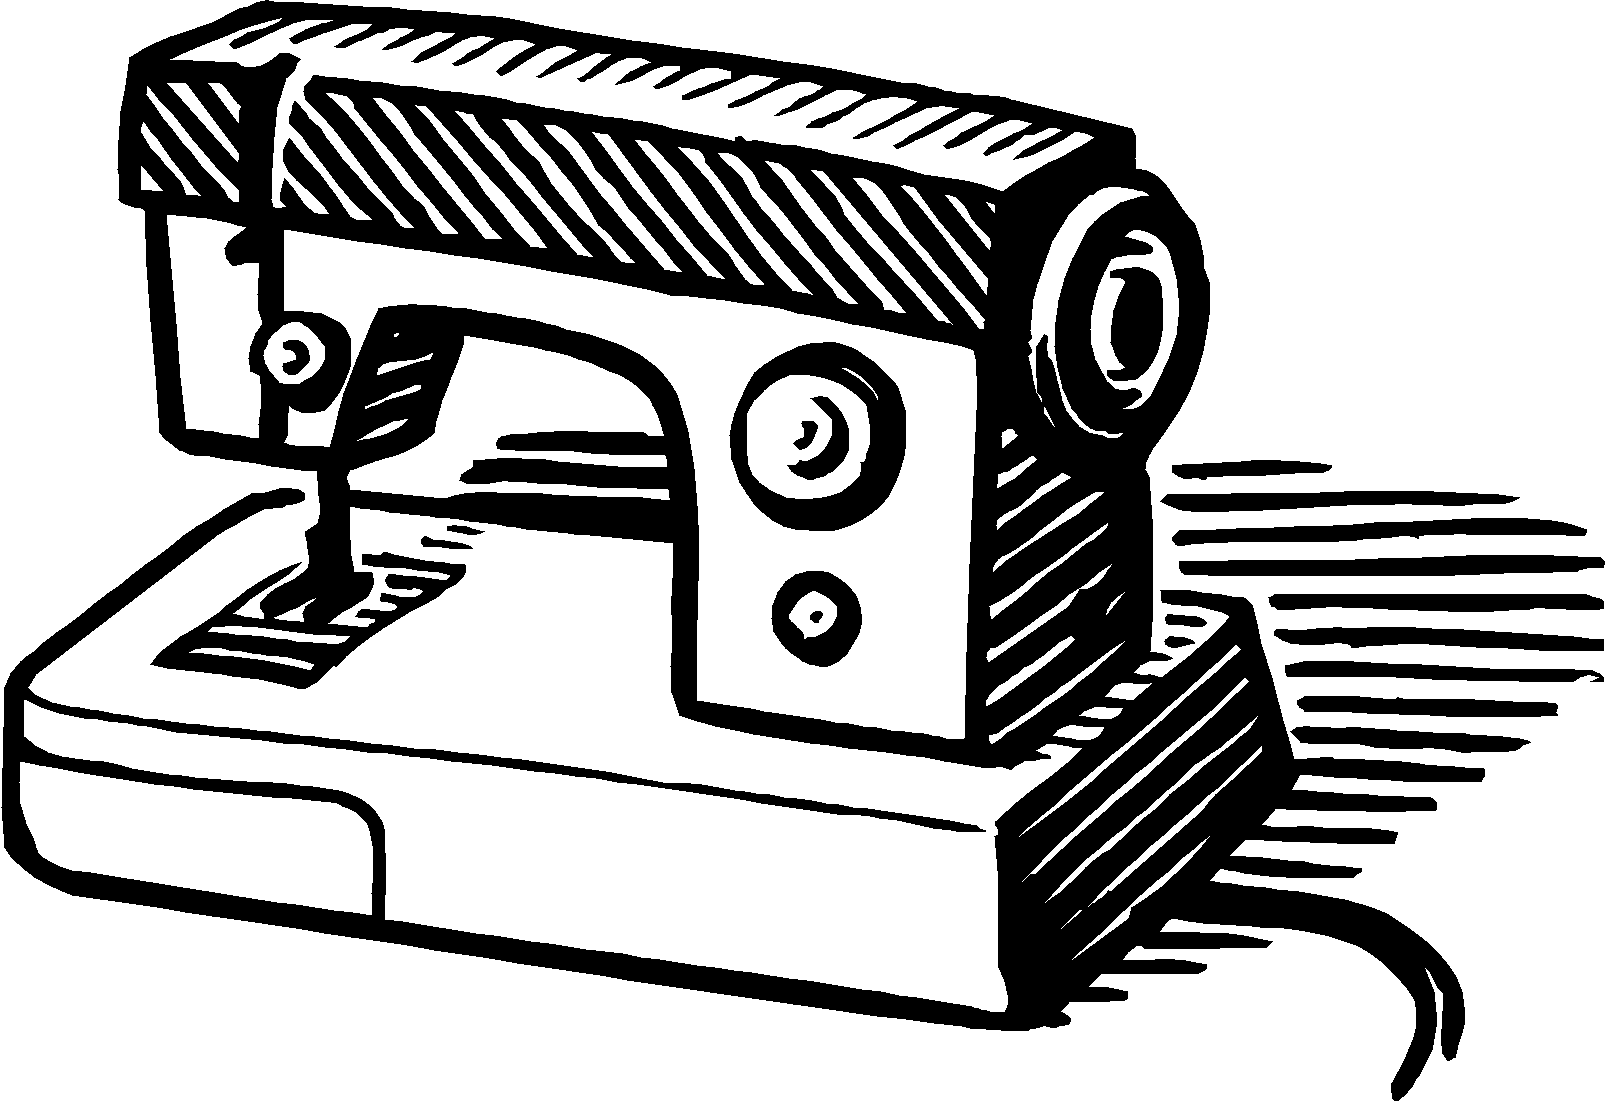 Швейная машина картинка для детей